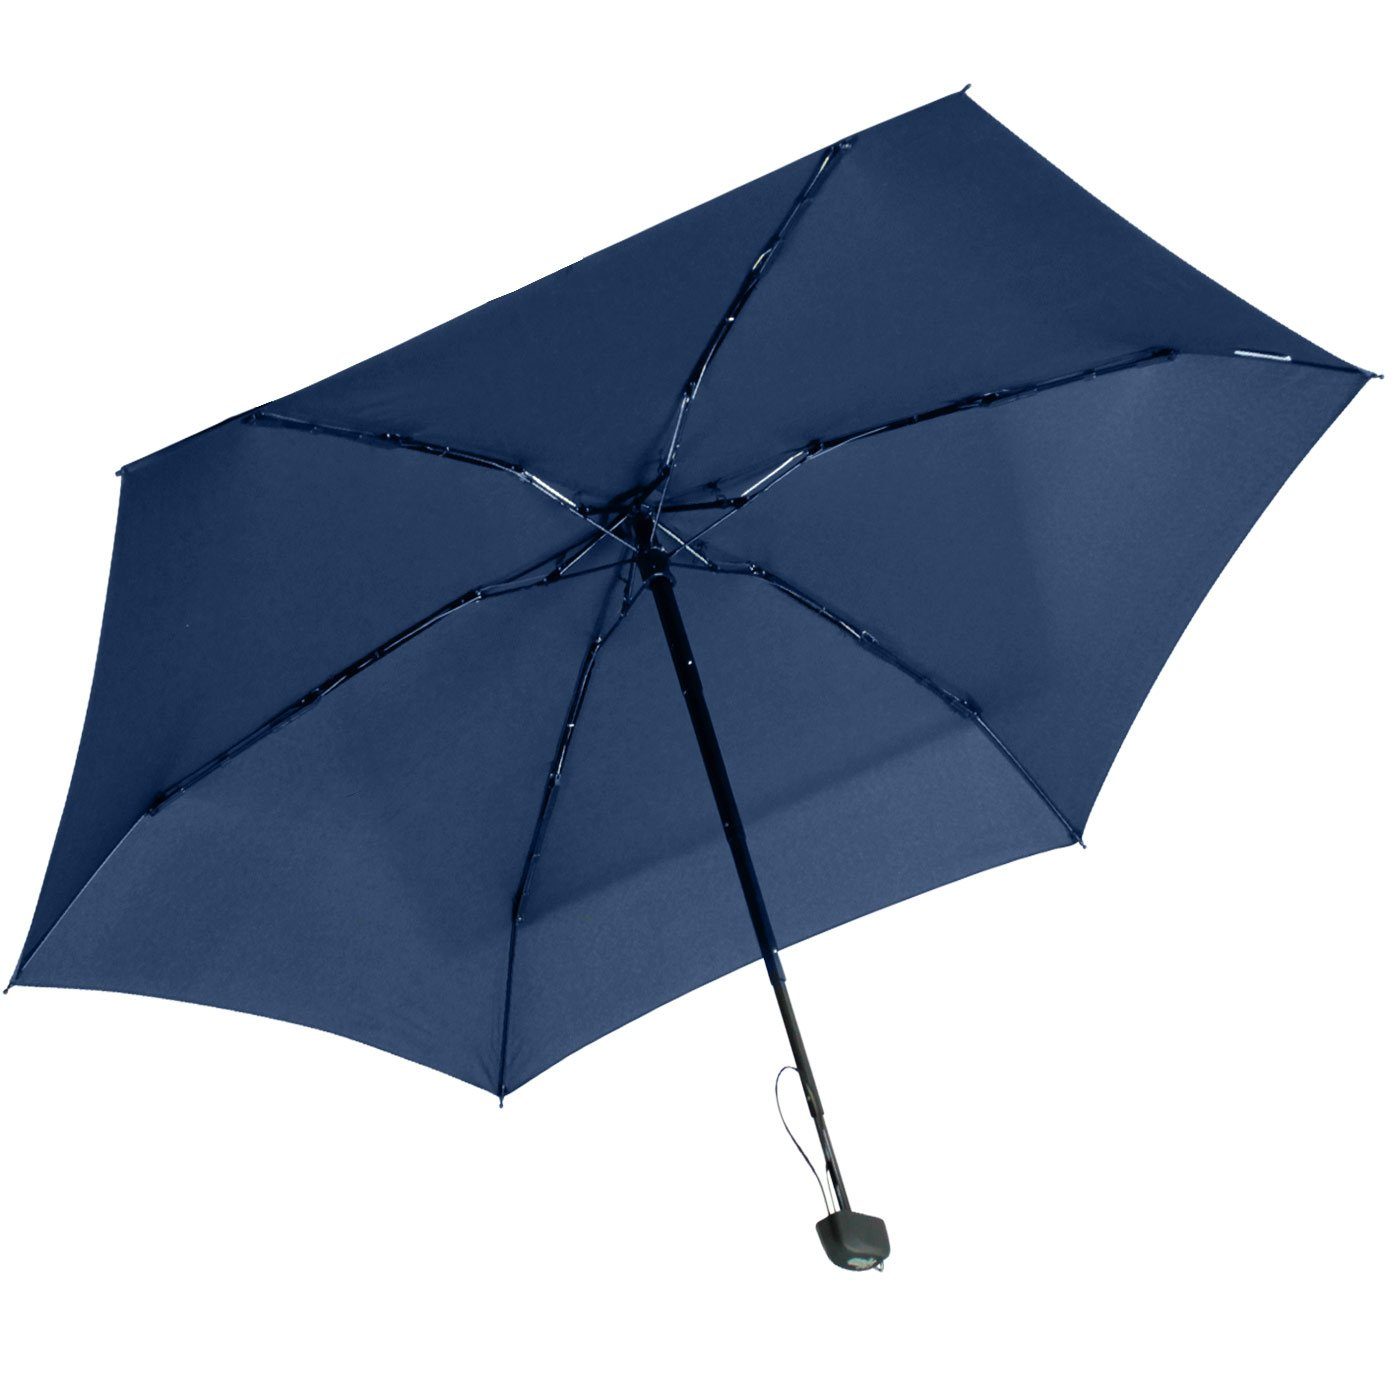 mit großem, Taschenregenschirm iX-brella Mini Super 18 94cm cm Schirm dunkelblau super-mini kleiner